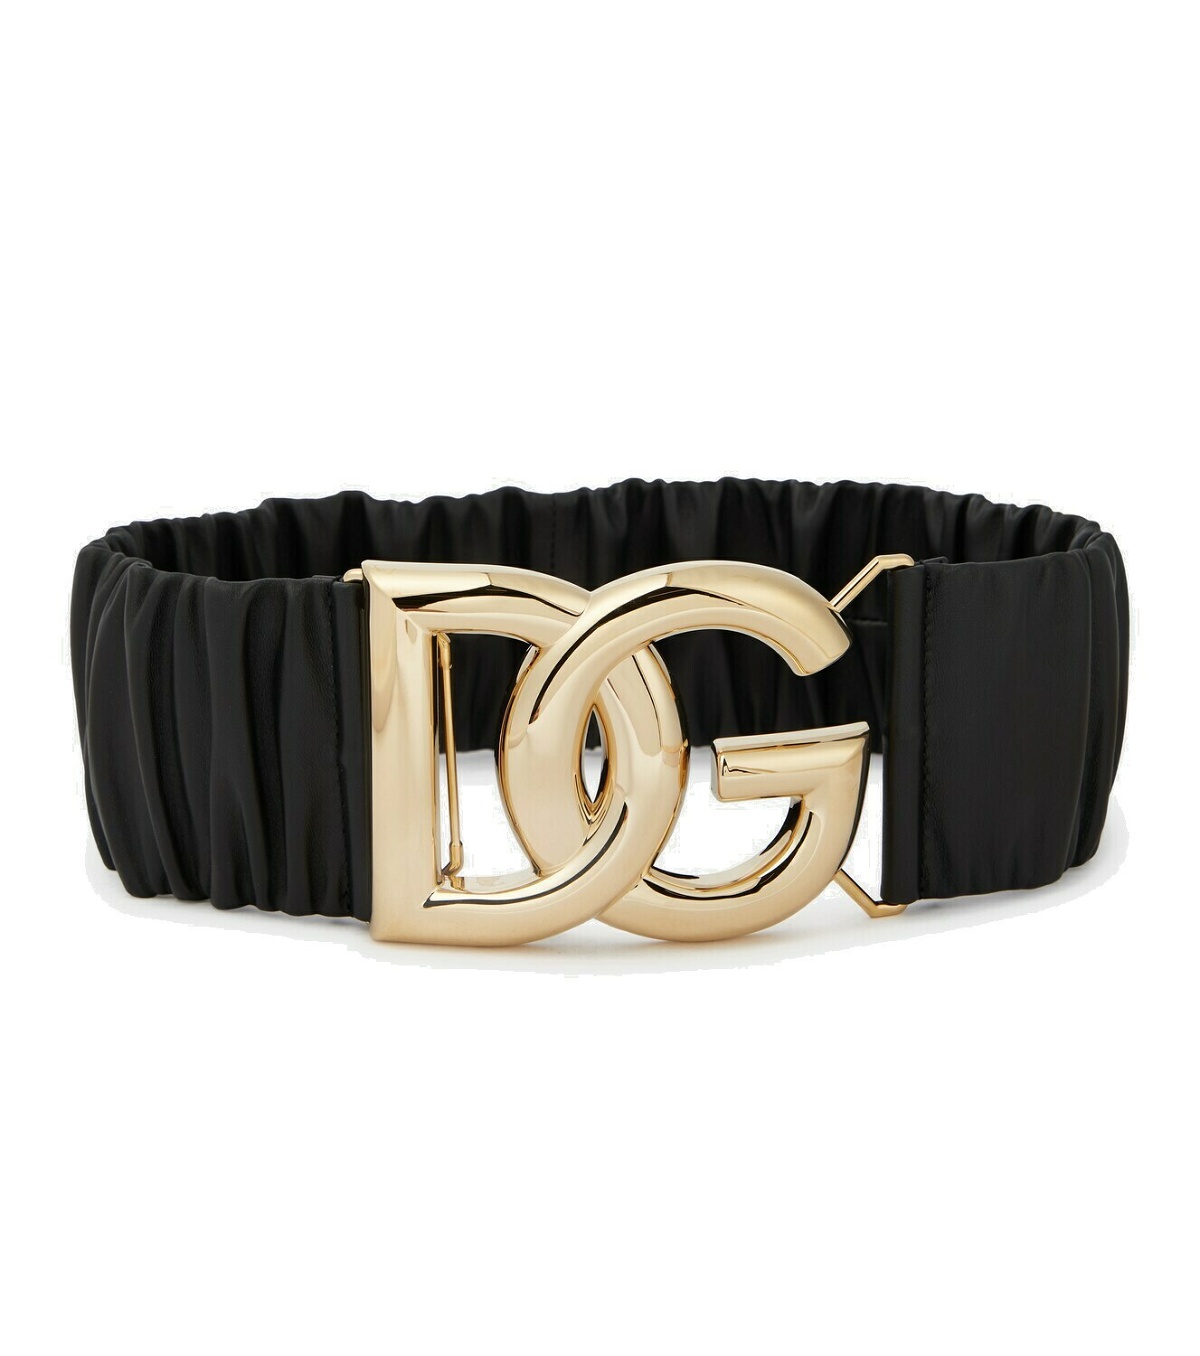 Dolce&Gabbana - DG gathered leather belt Dolce & Gabbana